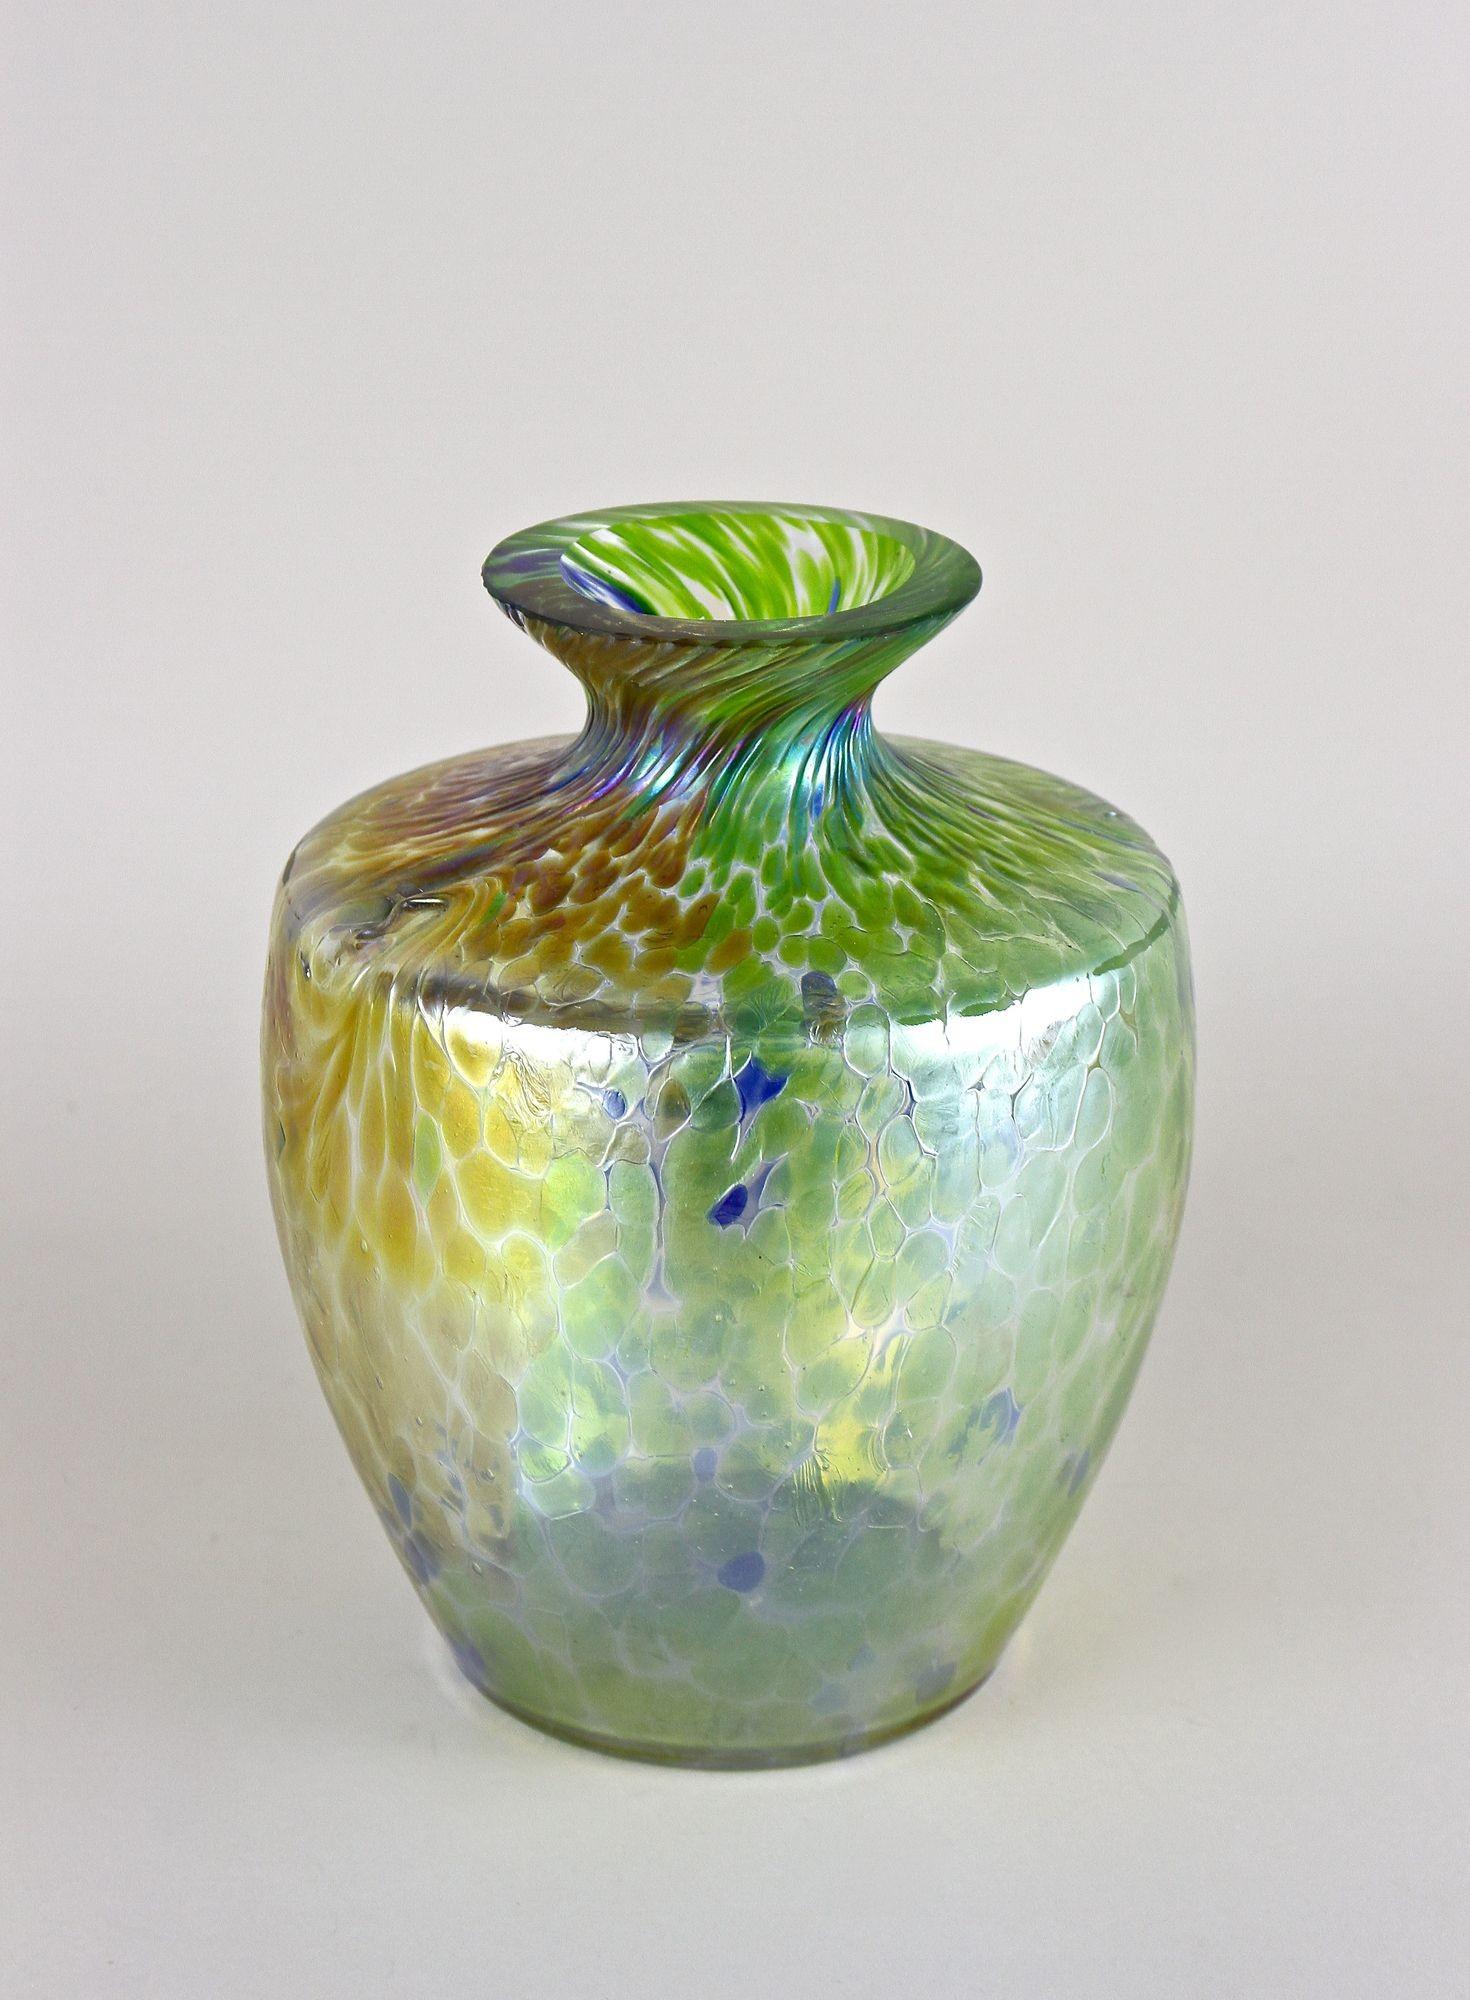 Atemberaubende, große schillernde böhmische Glasvase aus der Jugendstilzeit um 1905. Die absolut außergewöhnliche, bauchige Glasvase, die Fritz Heckert zugeschrieben wird, besticht durch ihre einzigartige grün, blau, gold und silber schimmernde,